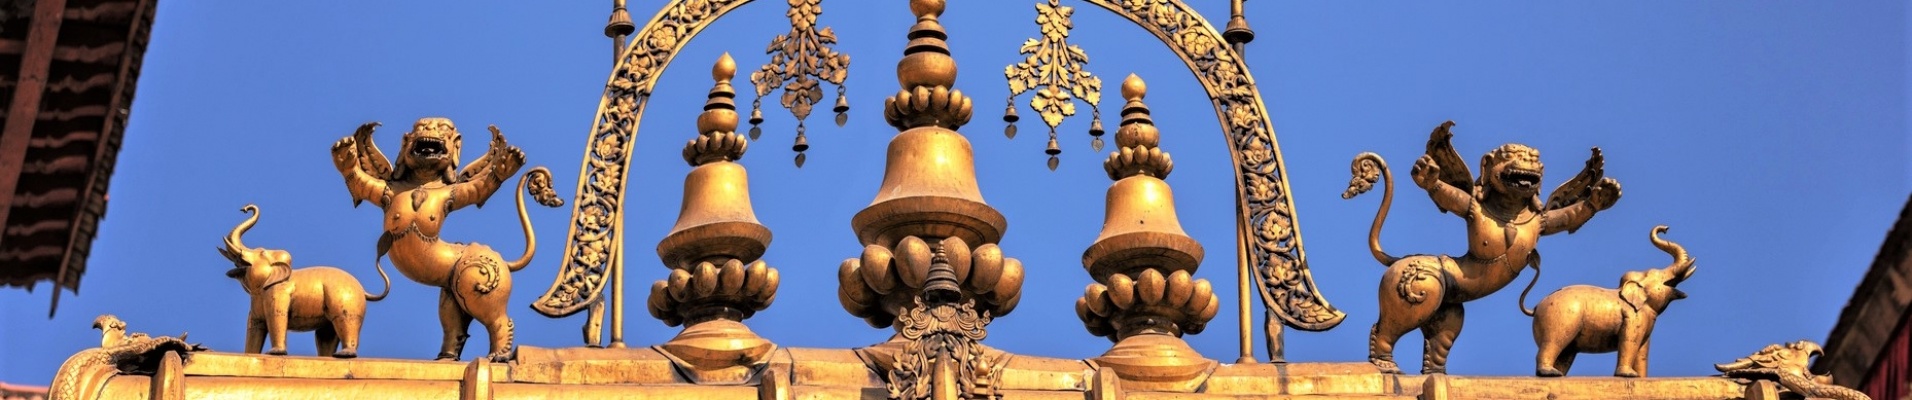 Divinités de la Porte d'or, Bhaktapur, Népal